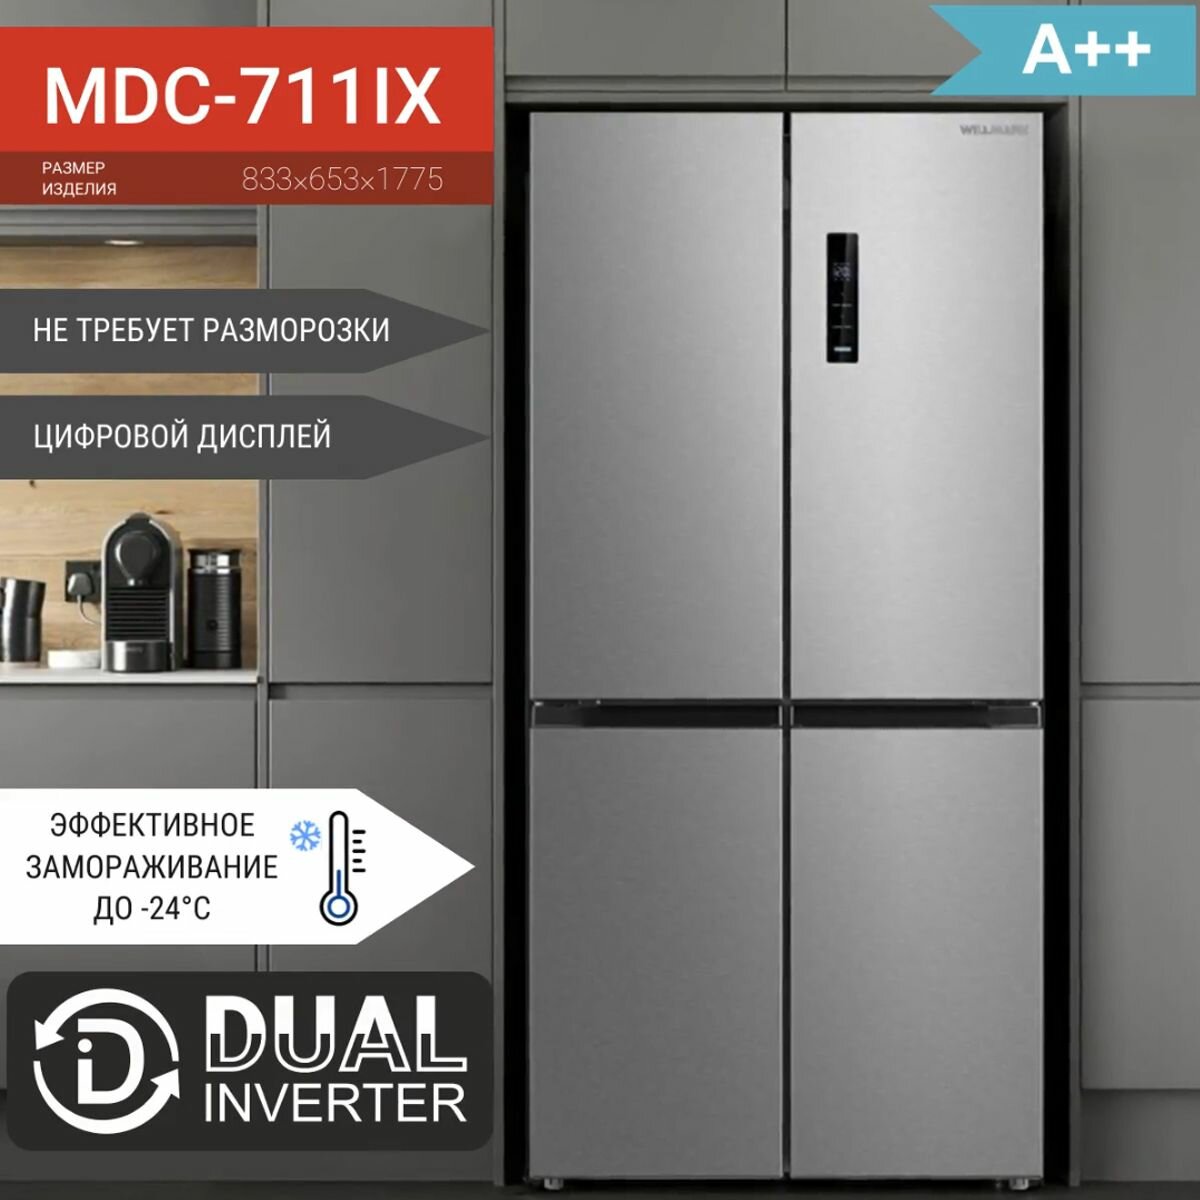 Холодильник WILLMARK MDC-711IX (519л4дв Cross door DUAL INVERTER Total NoFrost дисплей A++ Inox)